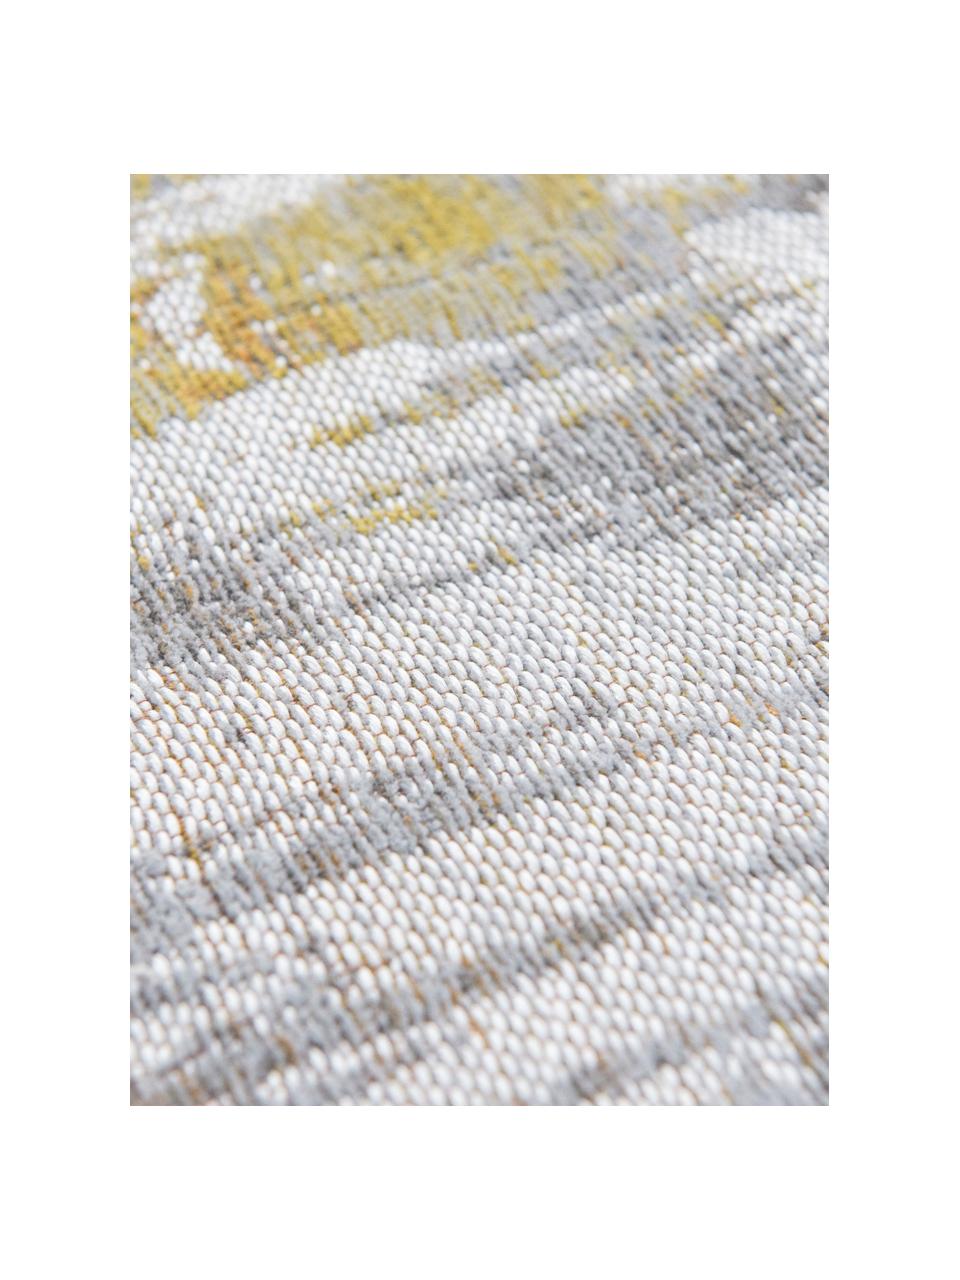 Tappeto di design grigio/giallo Streaks, Tessuto: Jacquard, Retro: Miscela di cotone, rivest, Giallo, grigio, bianco, Larg. 140 x Lung. 200 cm (taglia S)